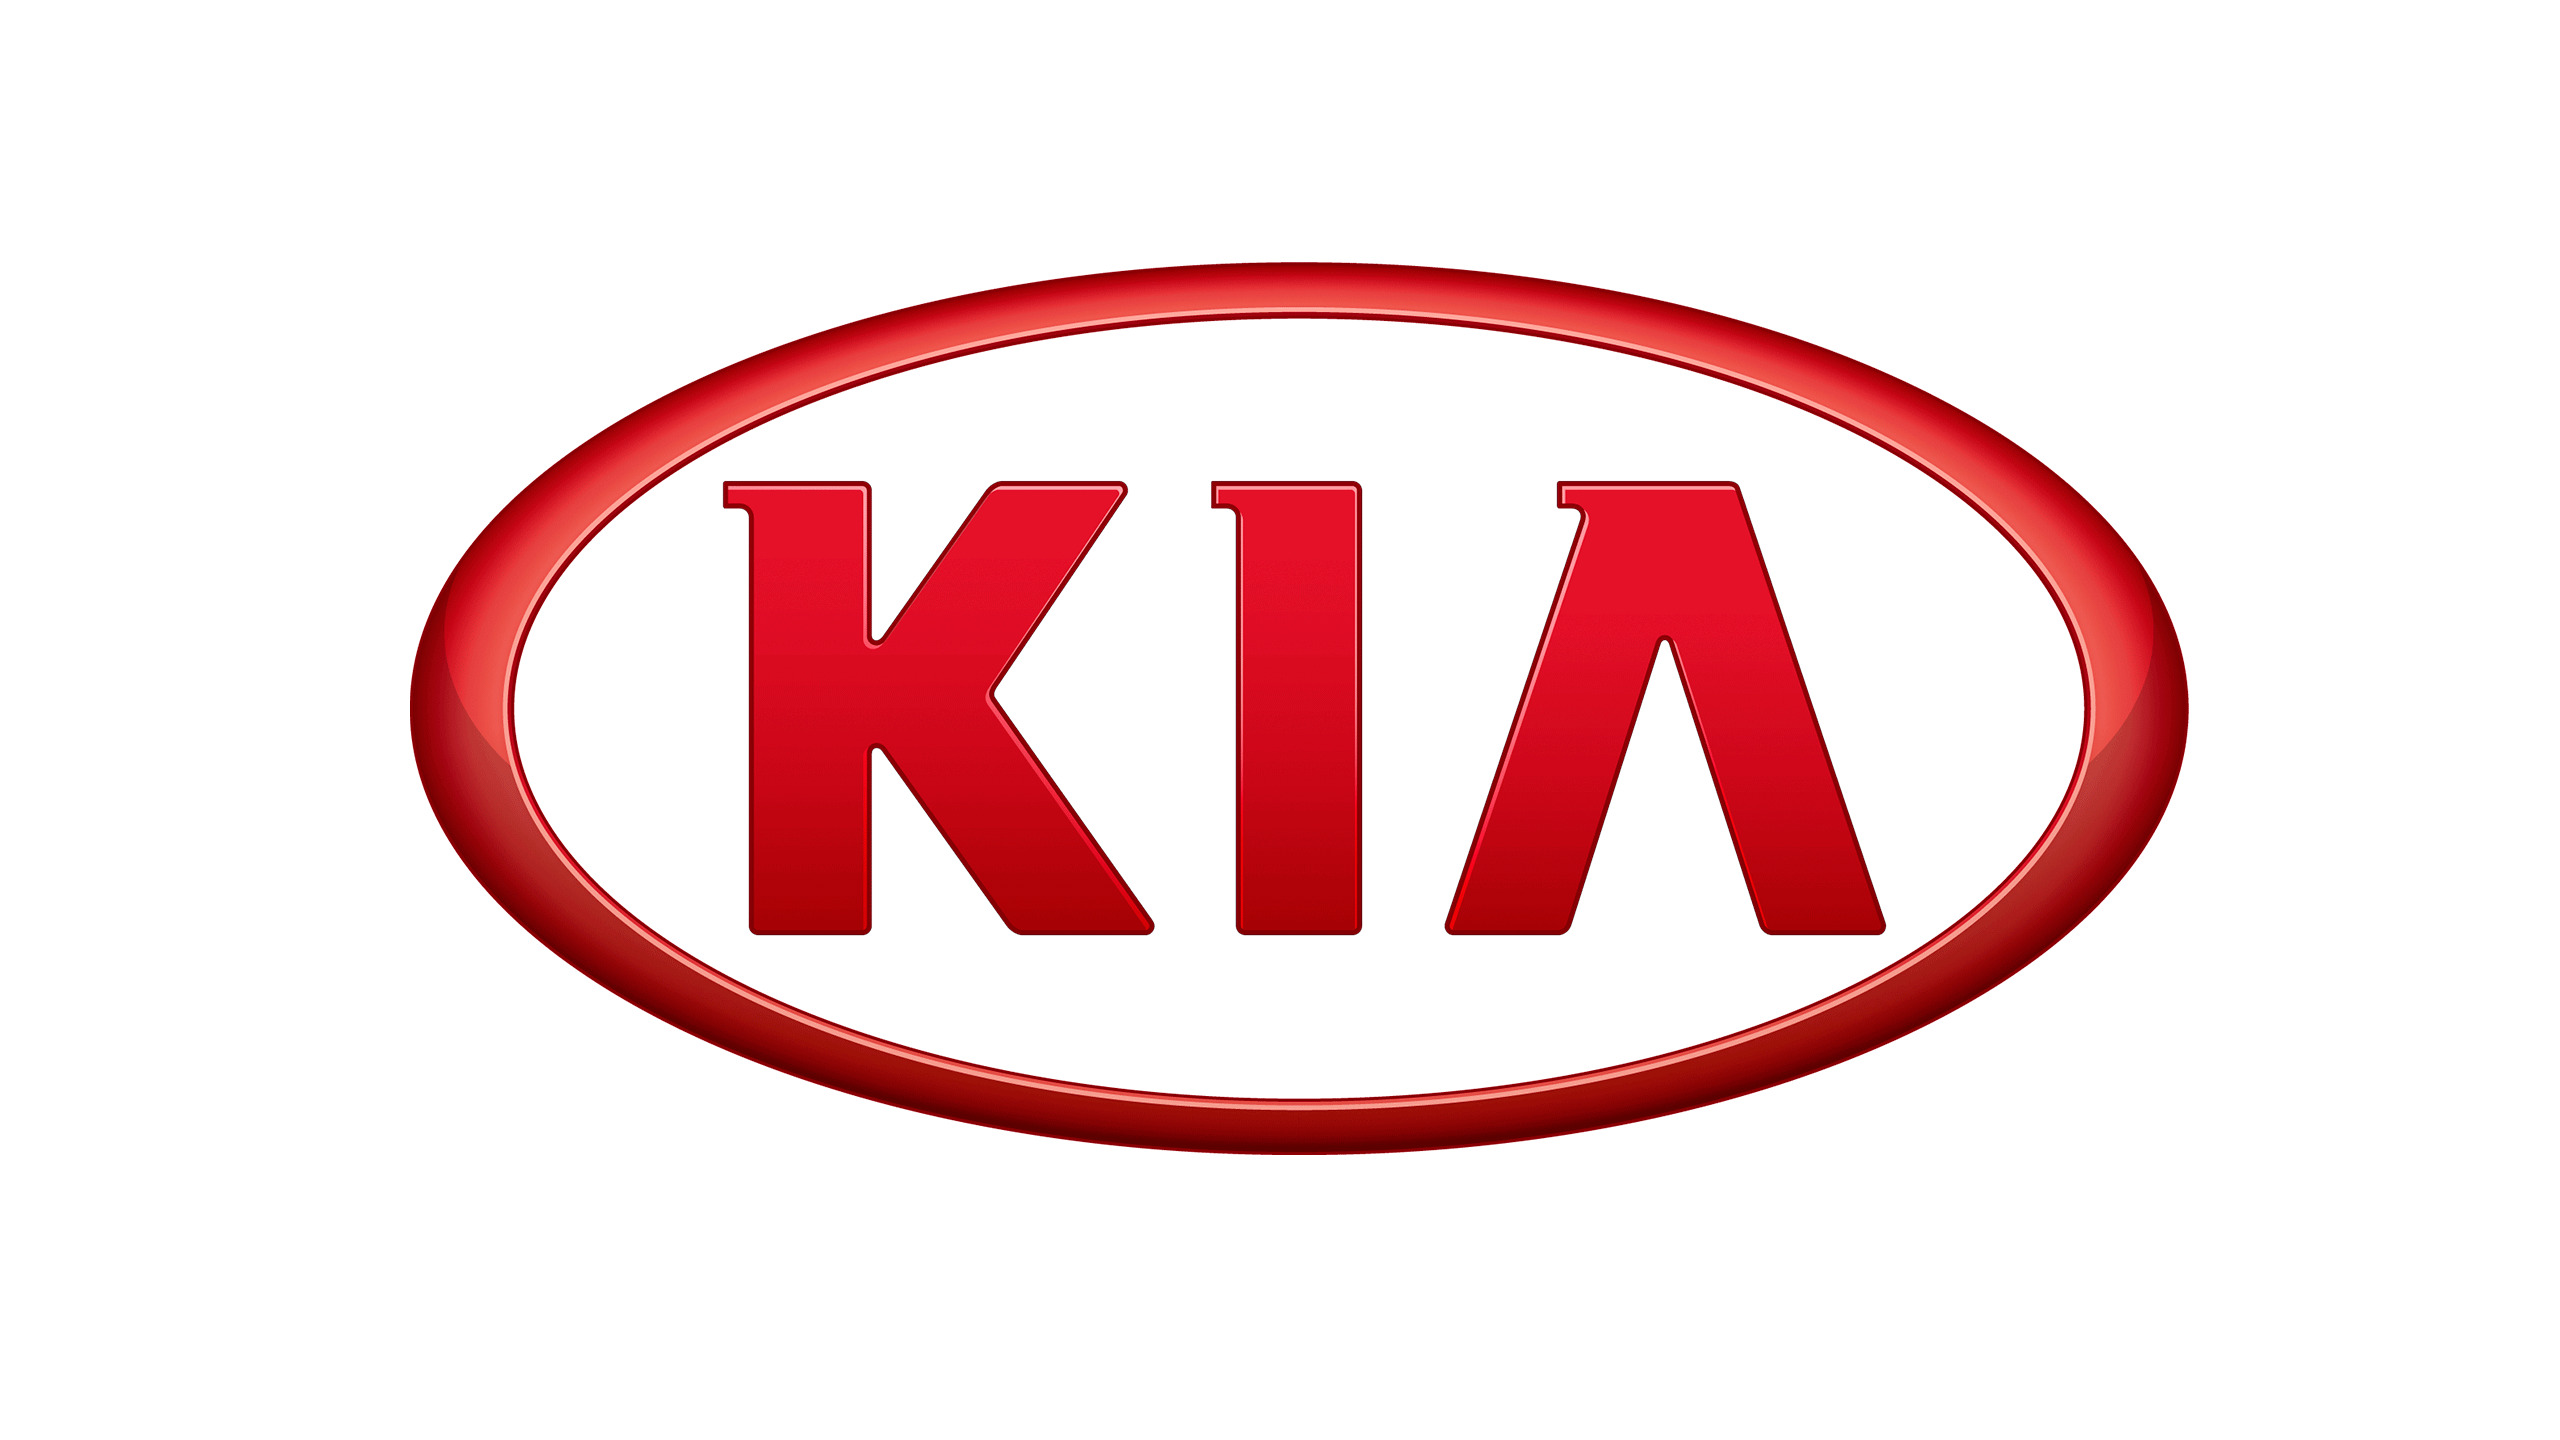 Car Logo Kia icons